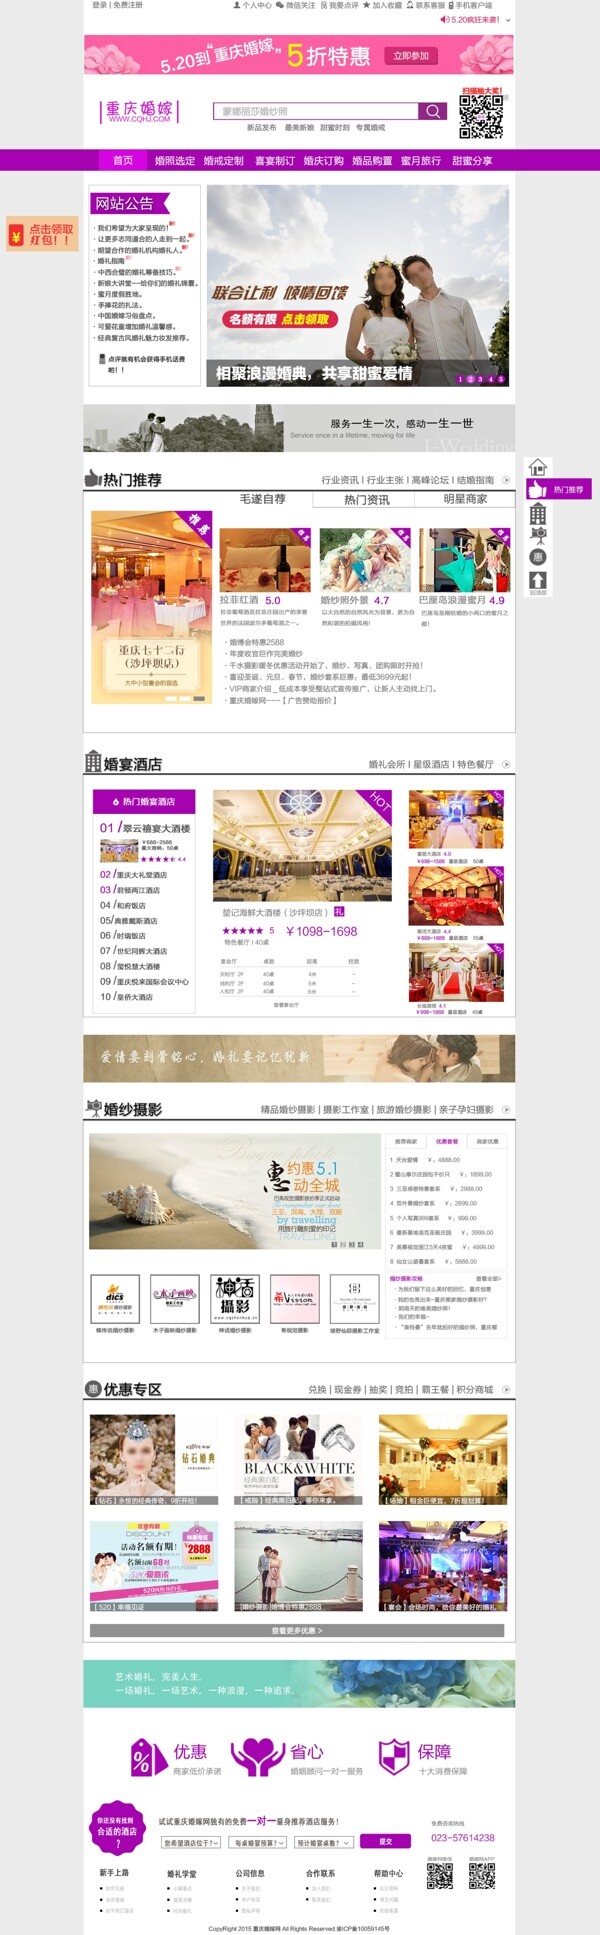 重庆婚嫁网站设计